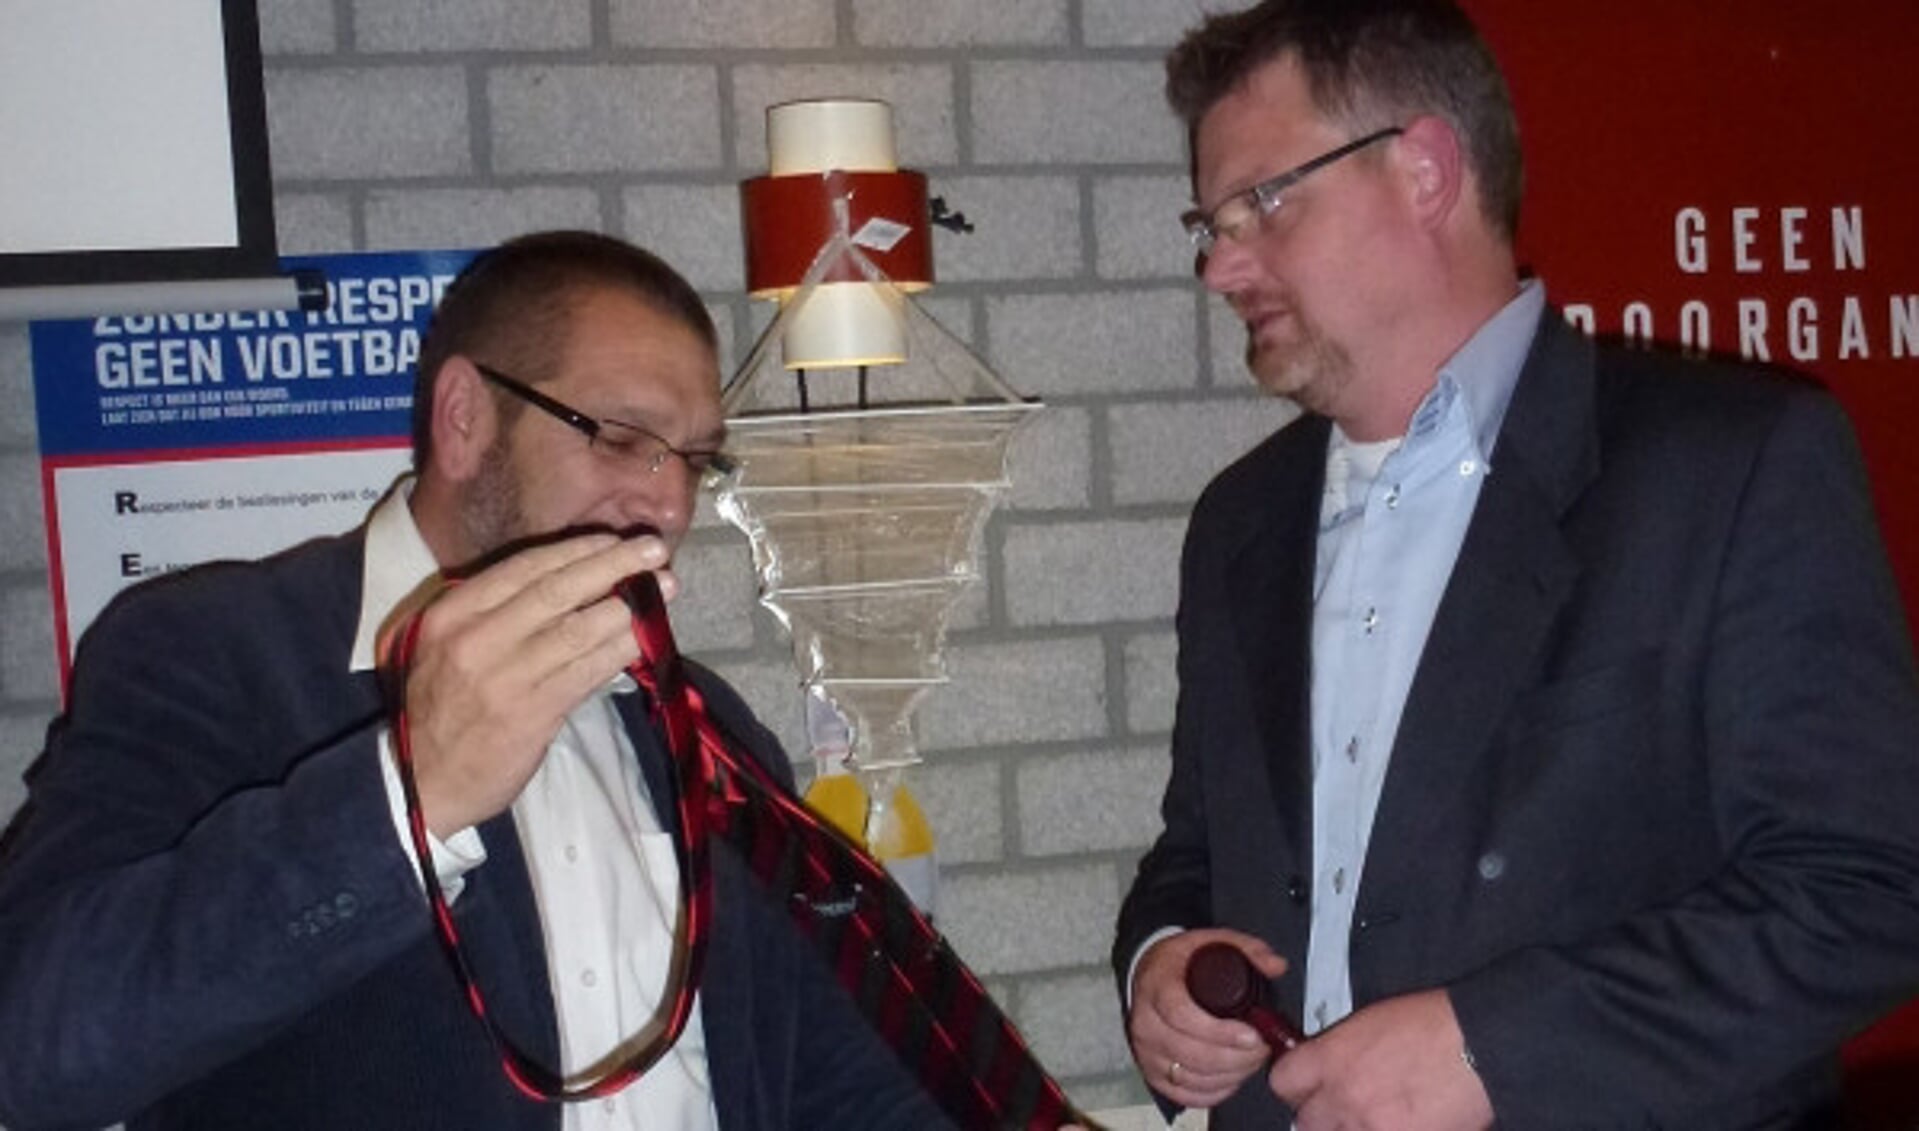  Piet Sparreboom overhandigt de stropdas aan Jan Pieter Stoop.